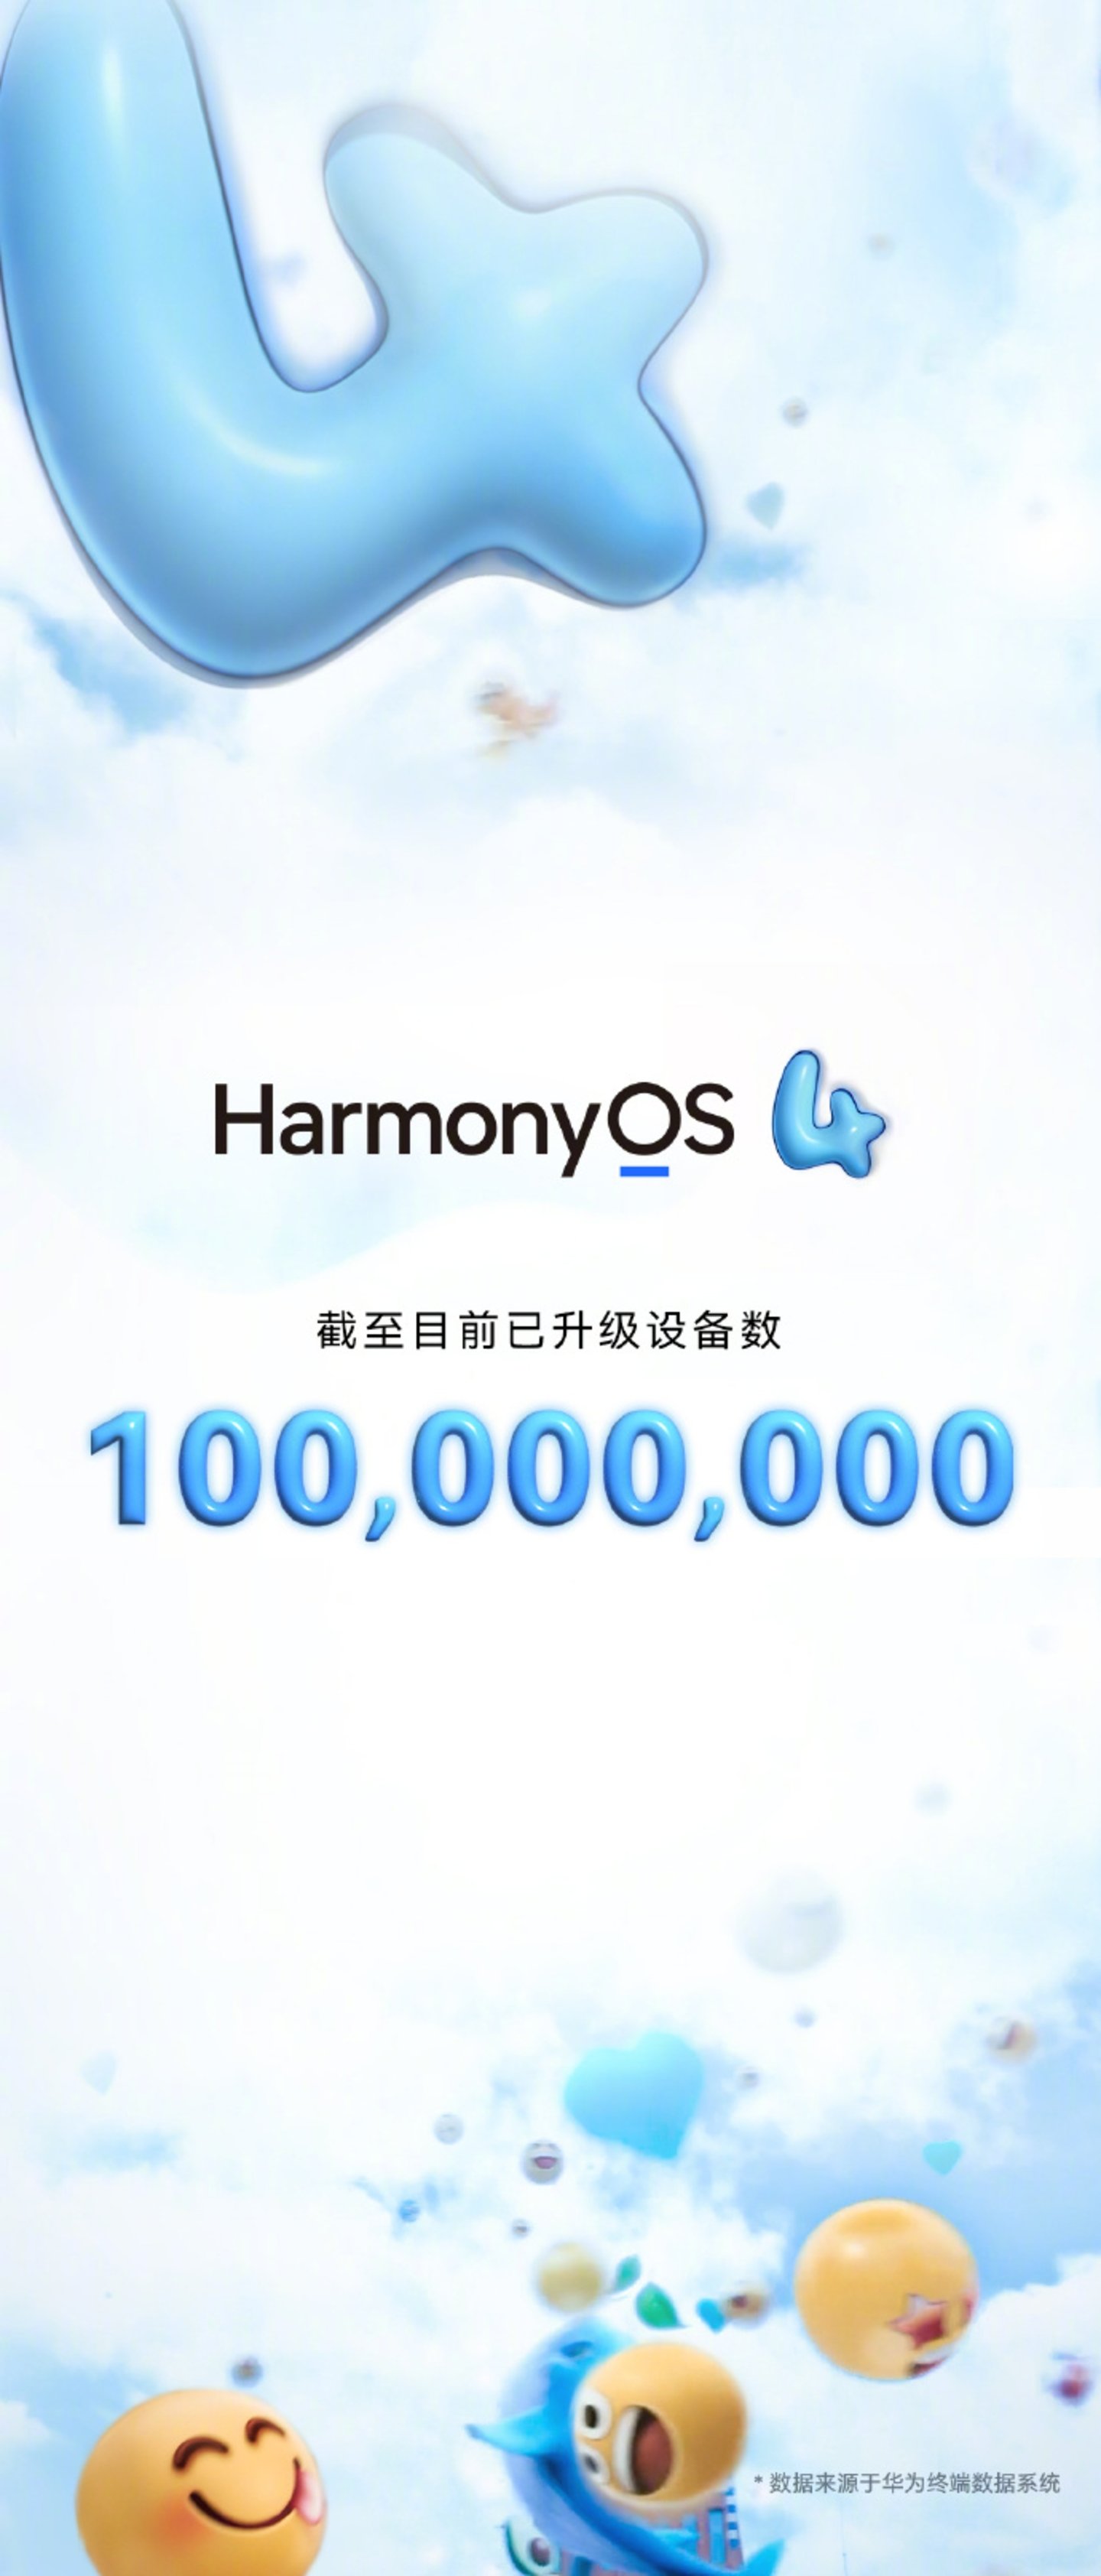 Pues sí, Huawei sí renace de la mano de HarmonyOS: más de 100 millones de dispositivos activos en 3 meses